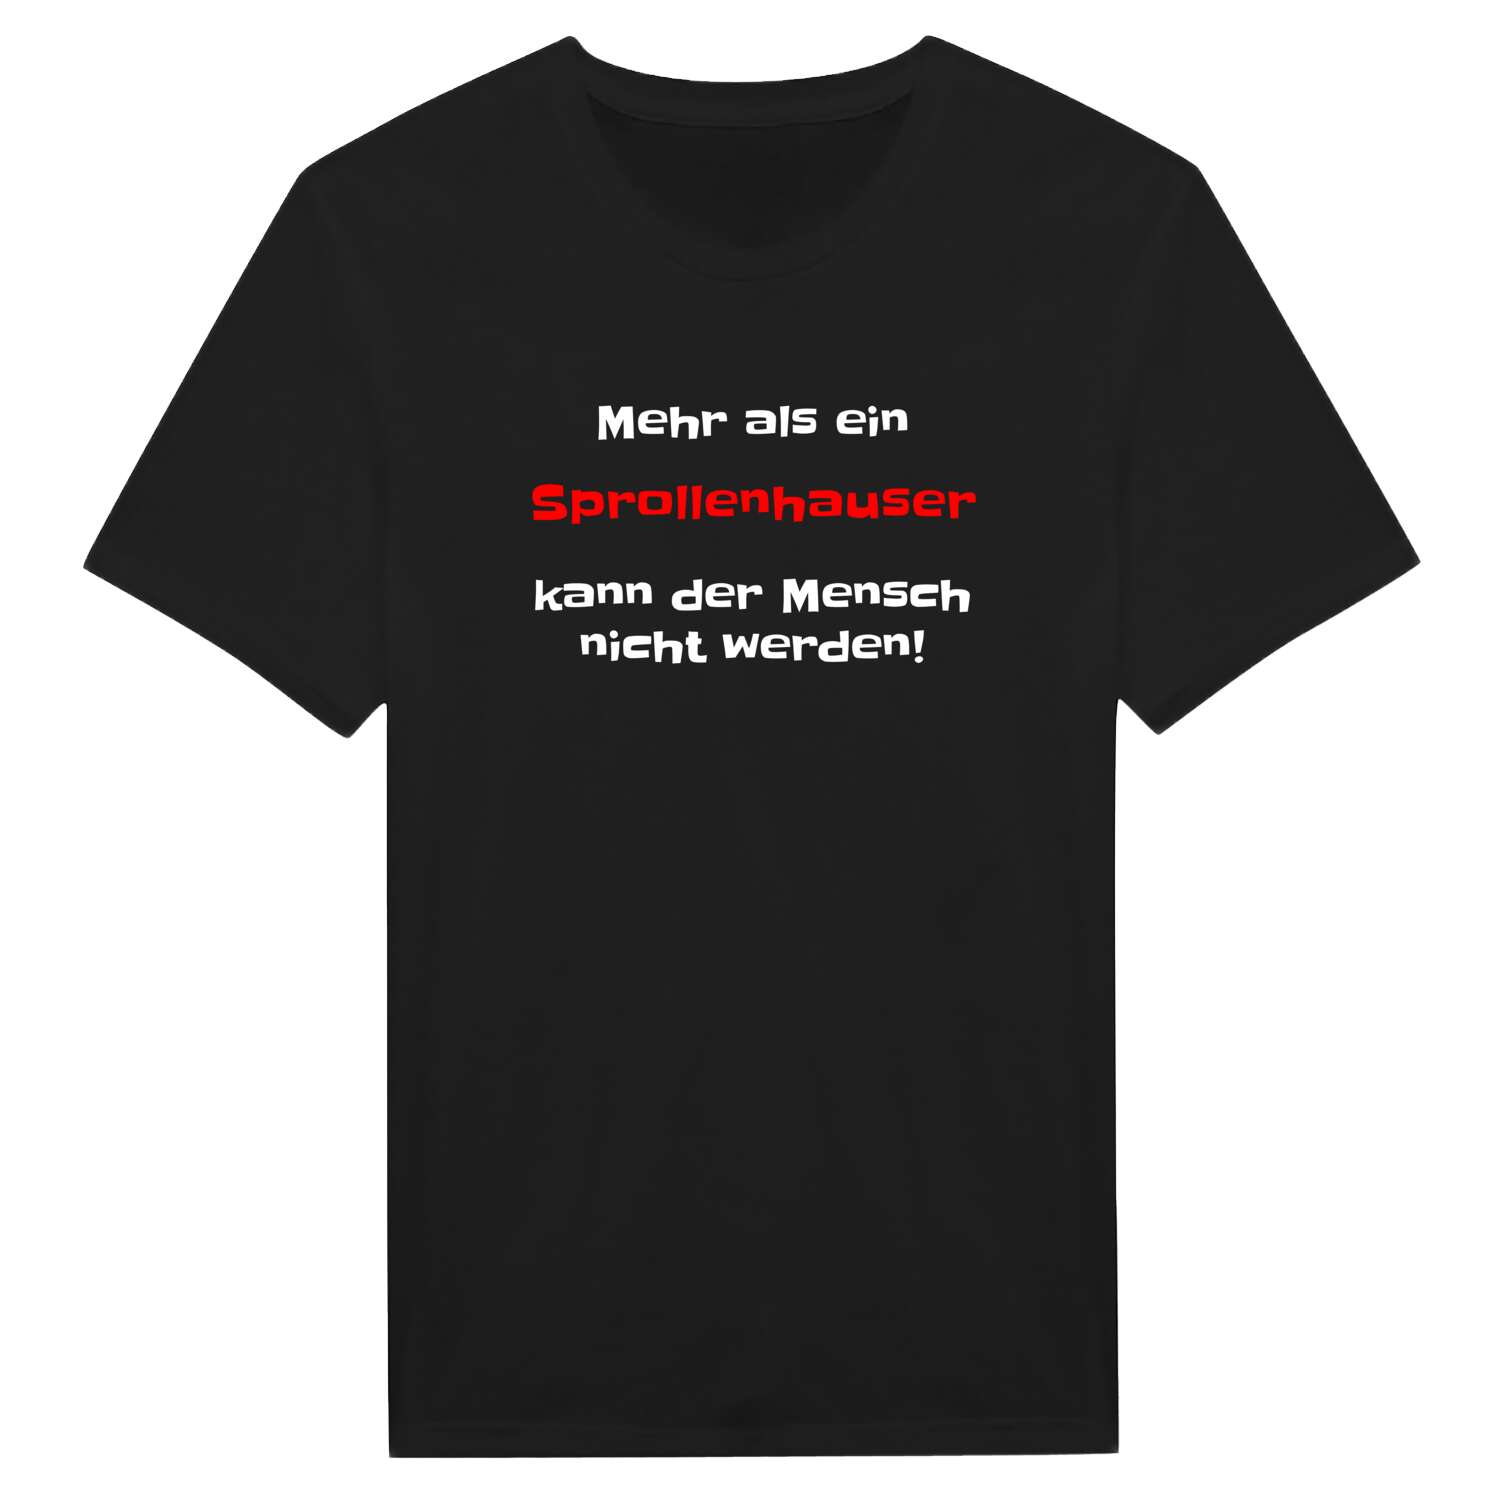 Sprollenhaus T-Shirt »Mehr als ein«